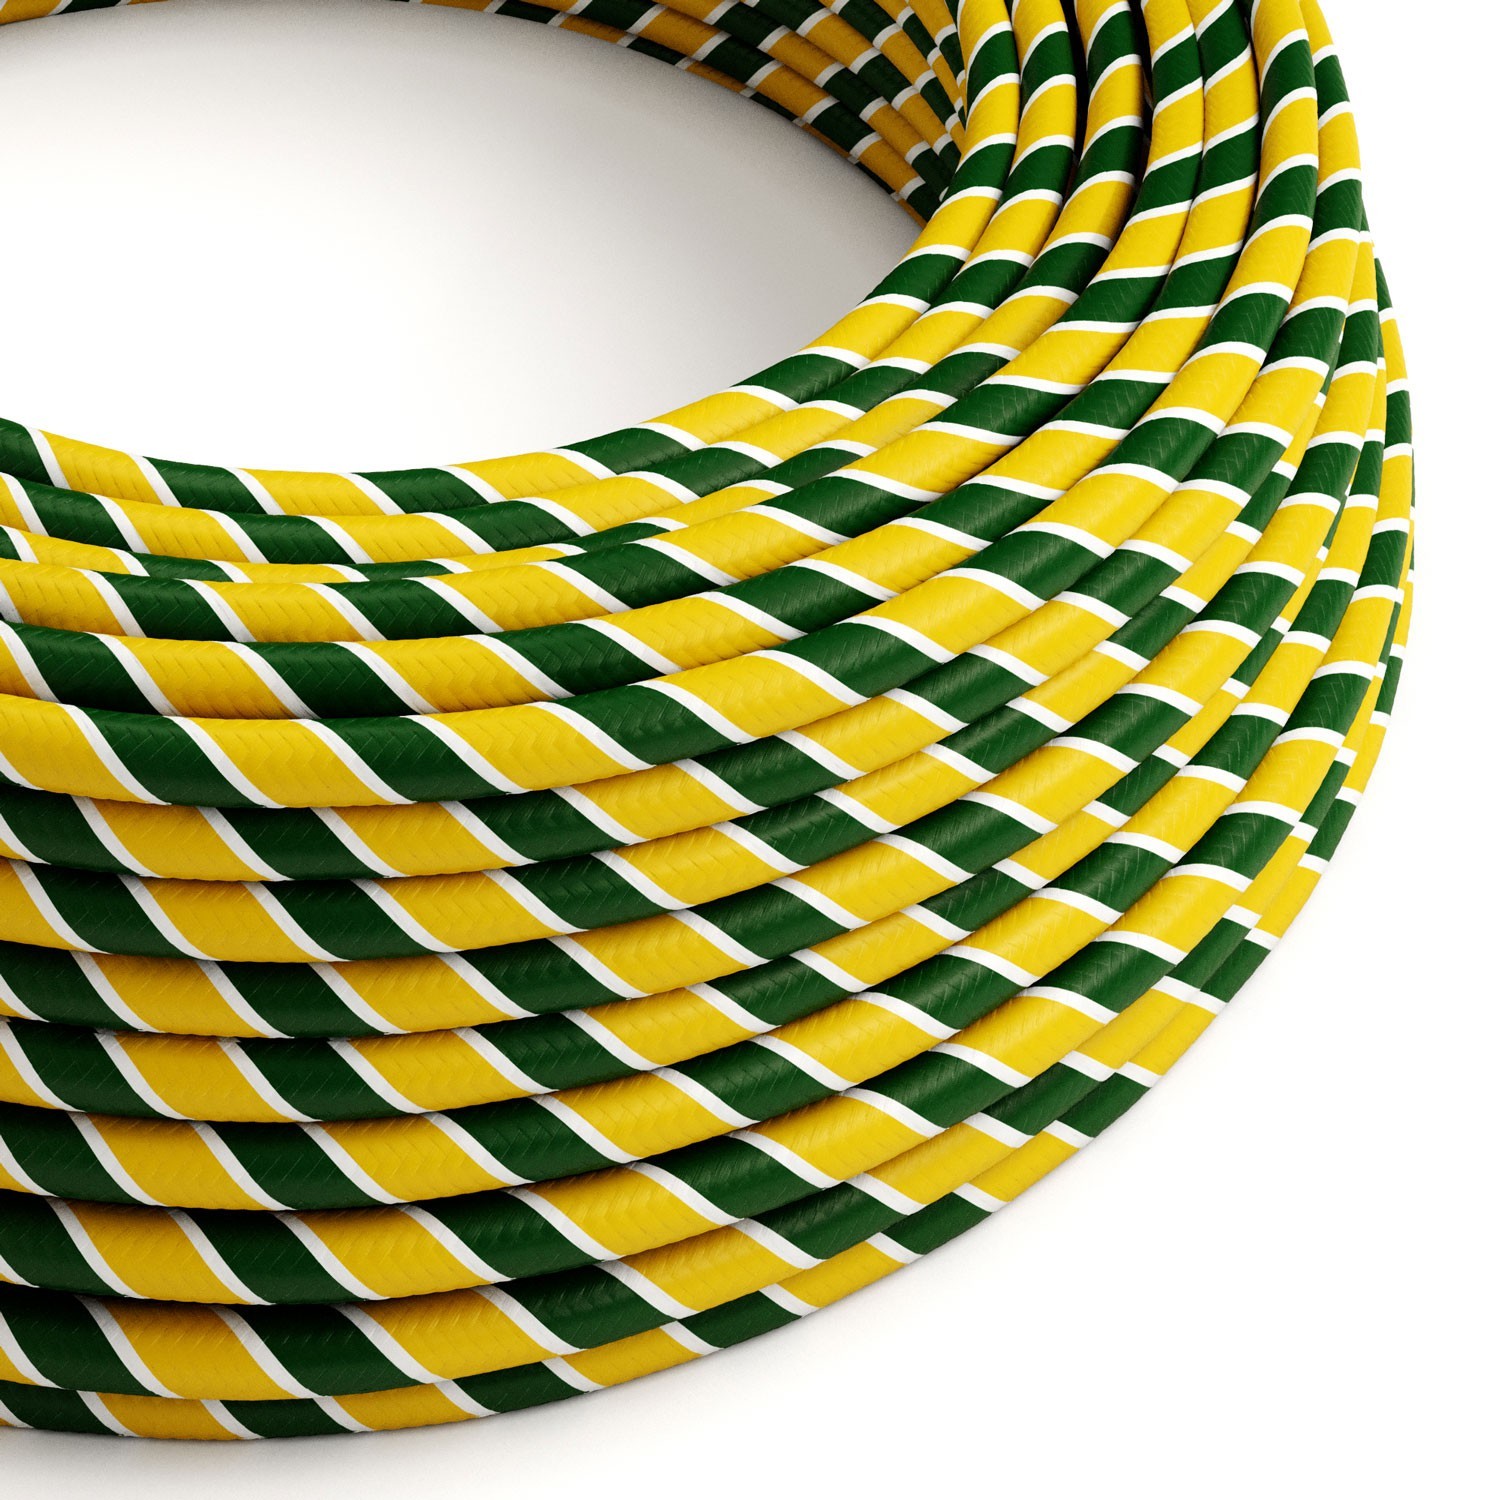 Okrúhly textilní elektrický HD kábel Vertigo Springbok ERM69 - zeleno žltý